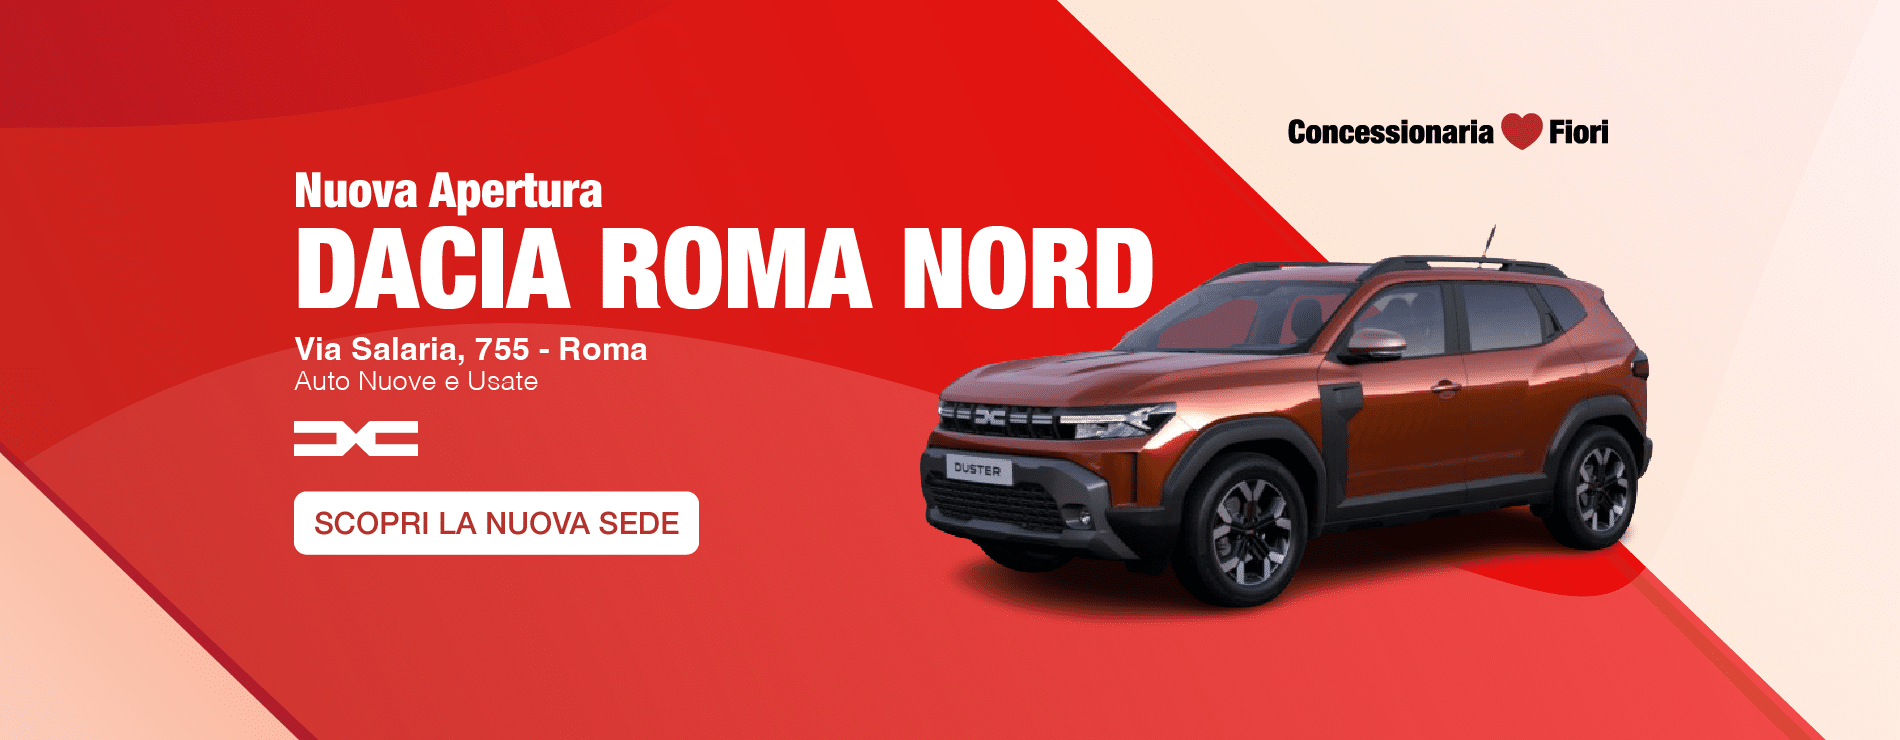 Dacia Roma Nord